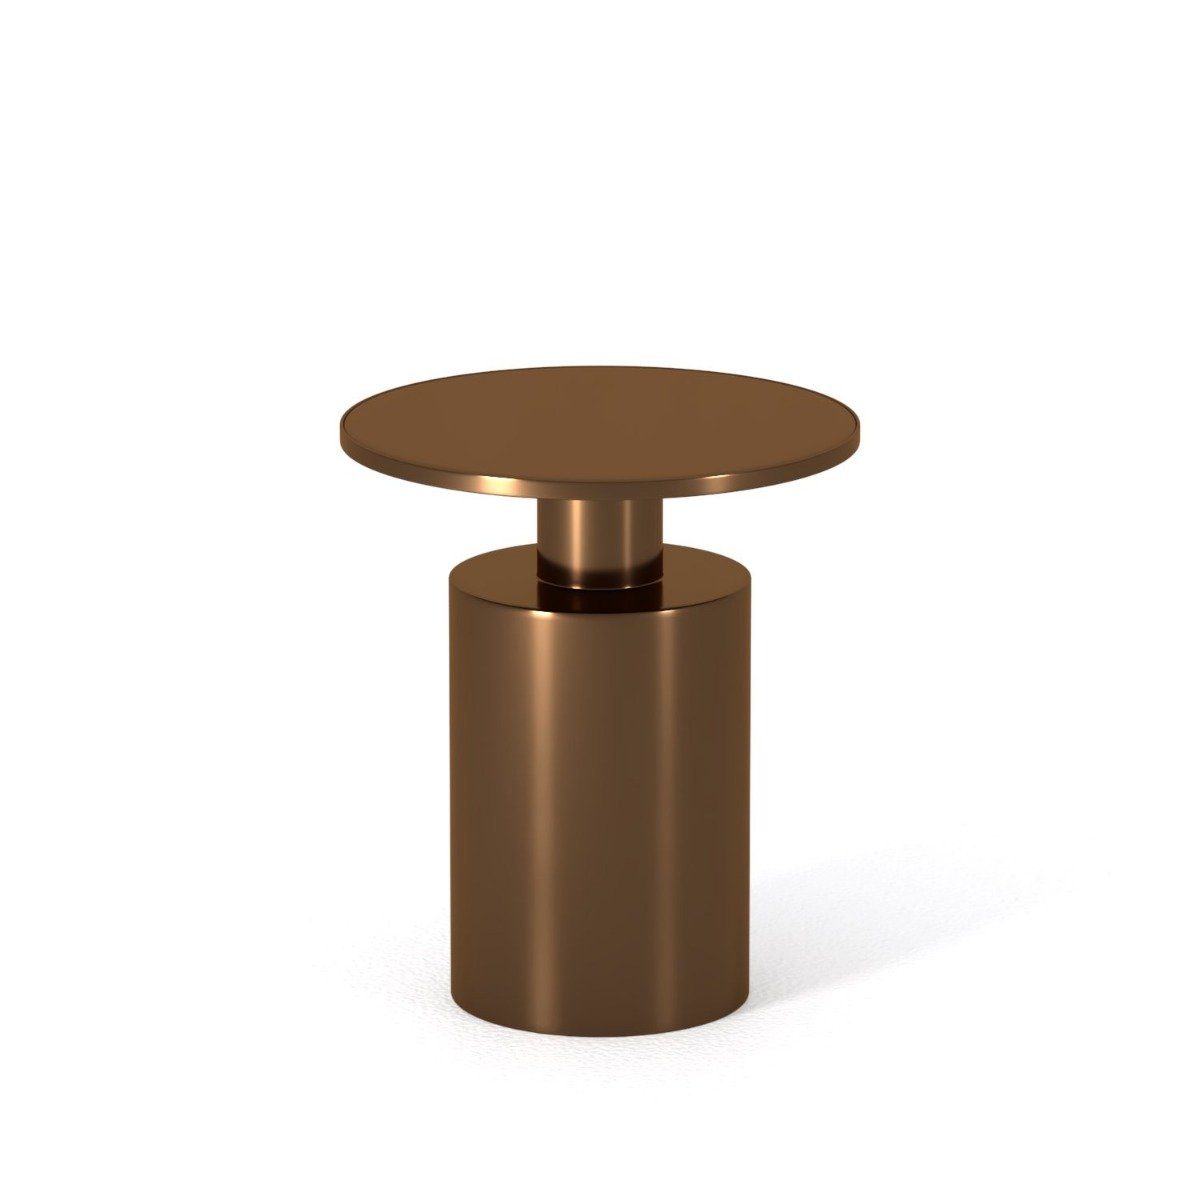 I Catchers Beistelltisch Beistelltisch Marriot Iron Drum Table Small Bronze